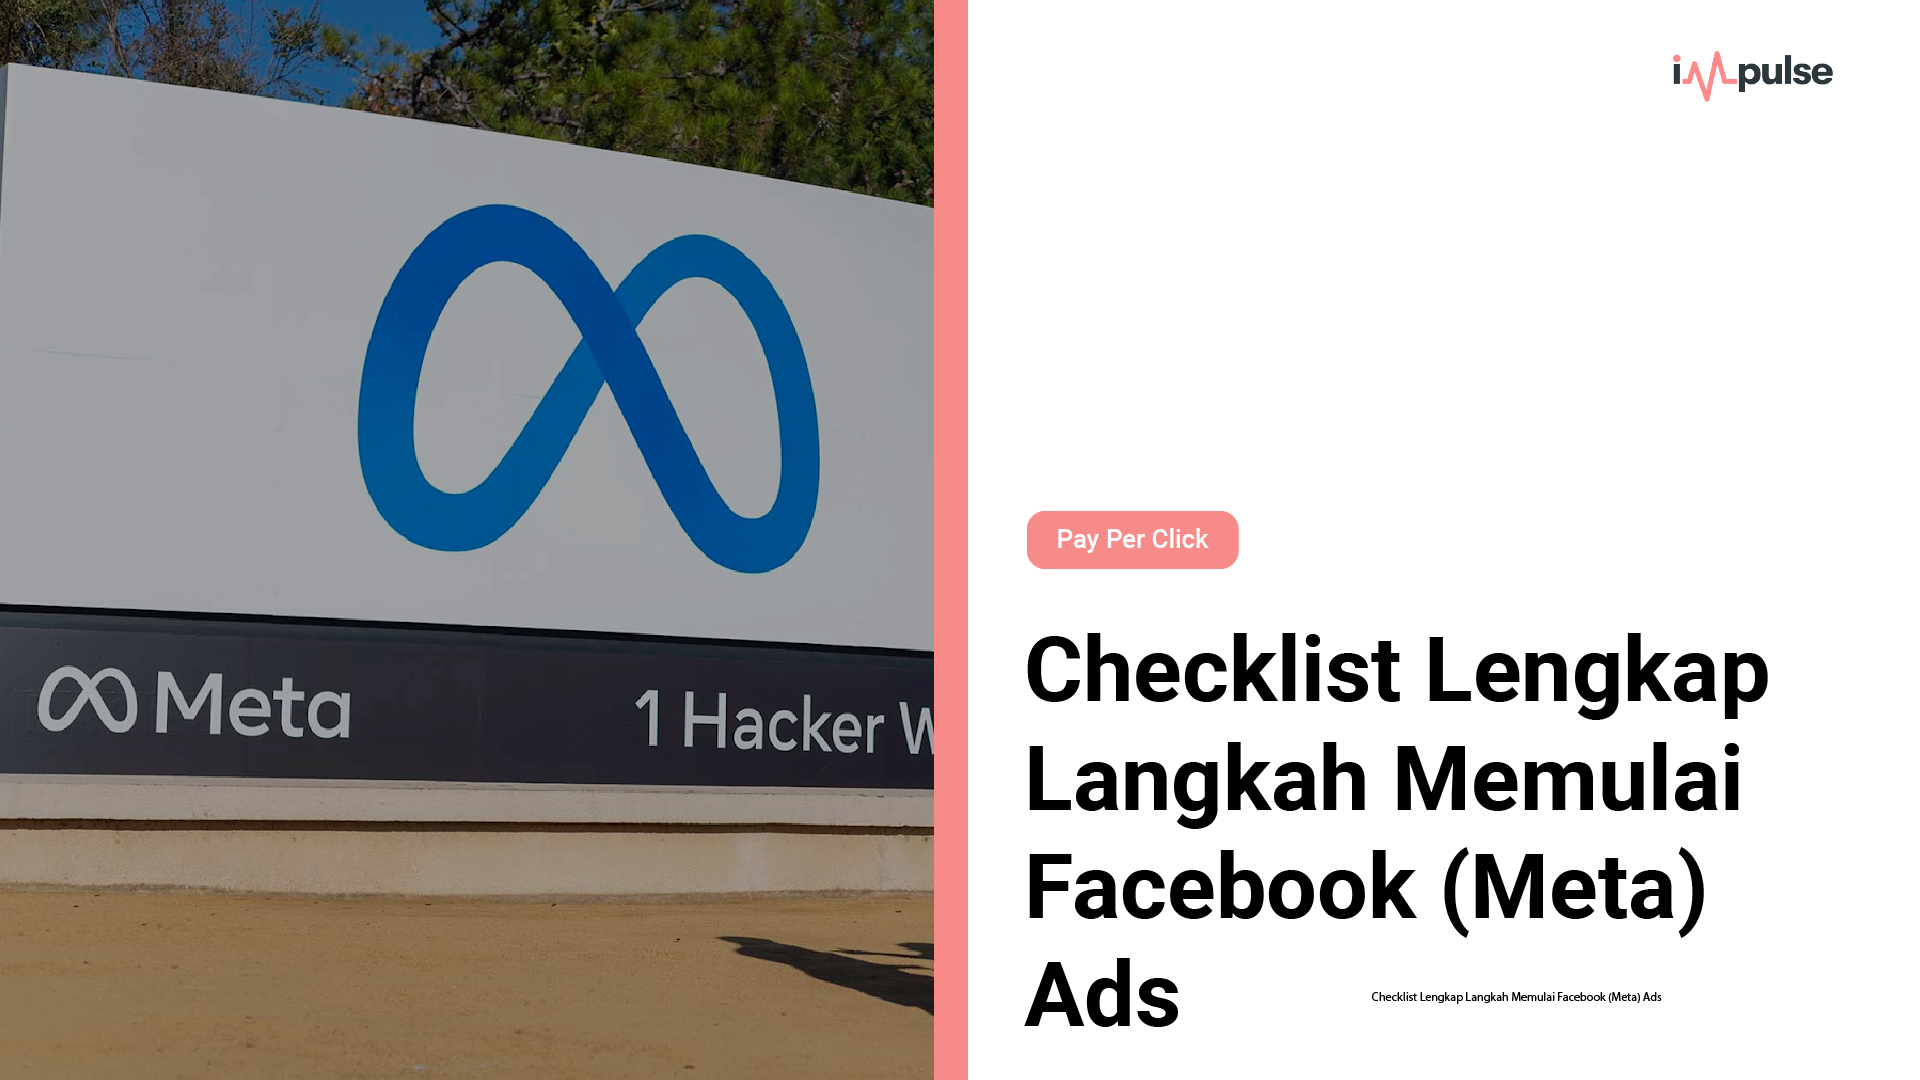 Checklist Lengkap Langkah Memulai Facebook (Meta) Ads